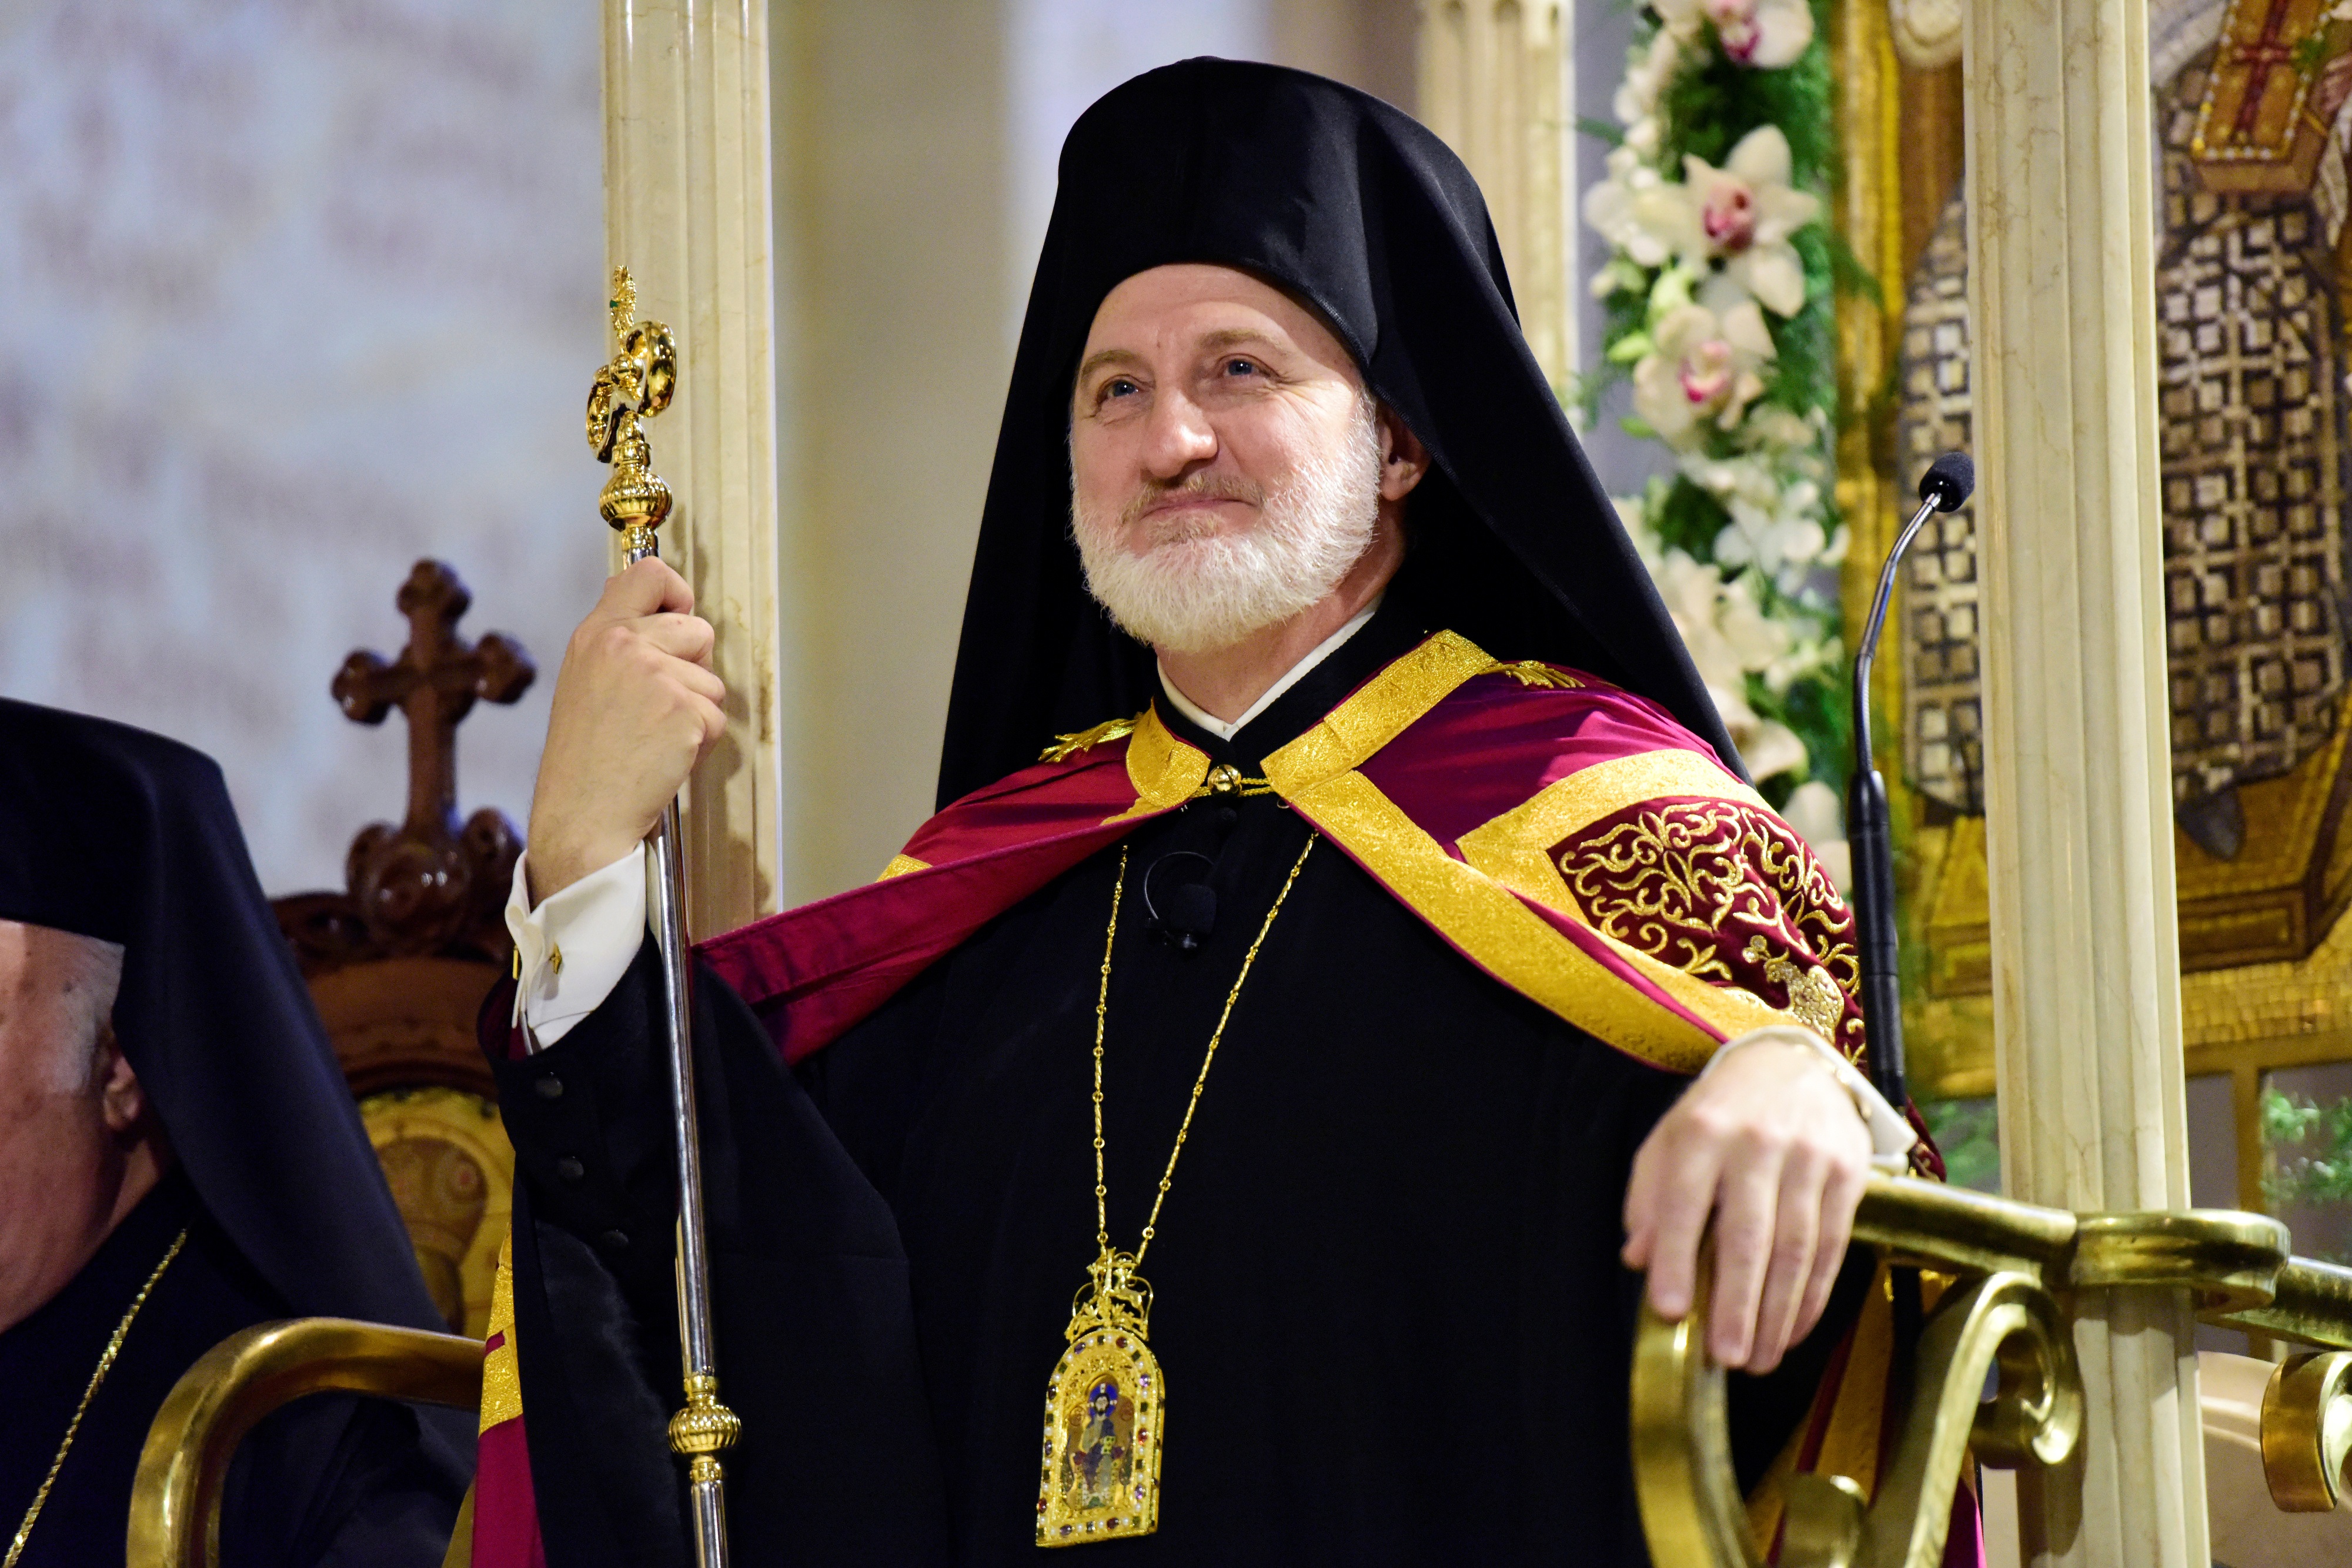 “Θλιβερή αδικία που πρέπει να αποκατασταθεί” λέει ο Αρχιεπίσκοπος Ελπιδοφόρος για την επέτειο του Αττίλα